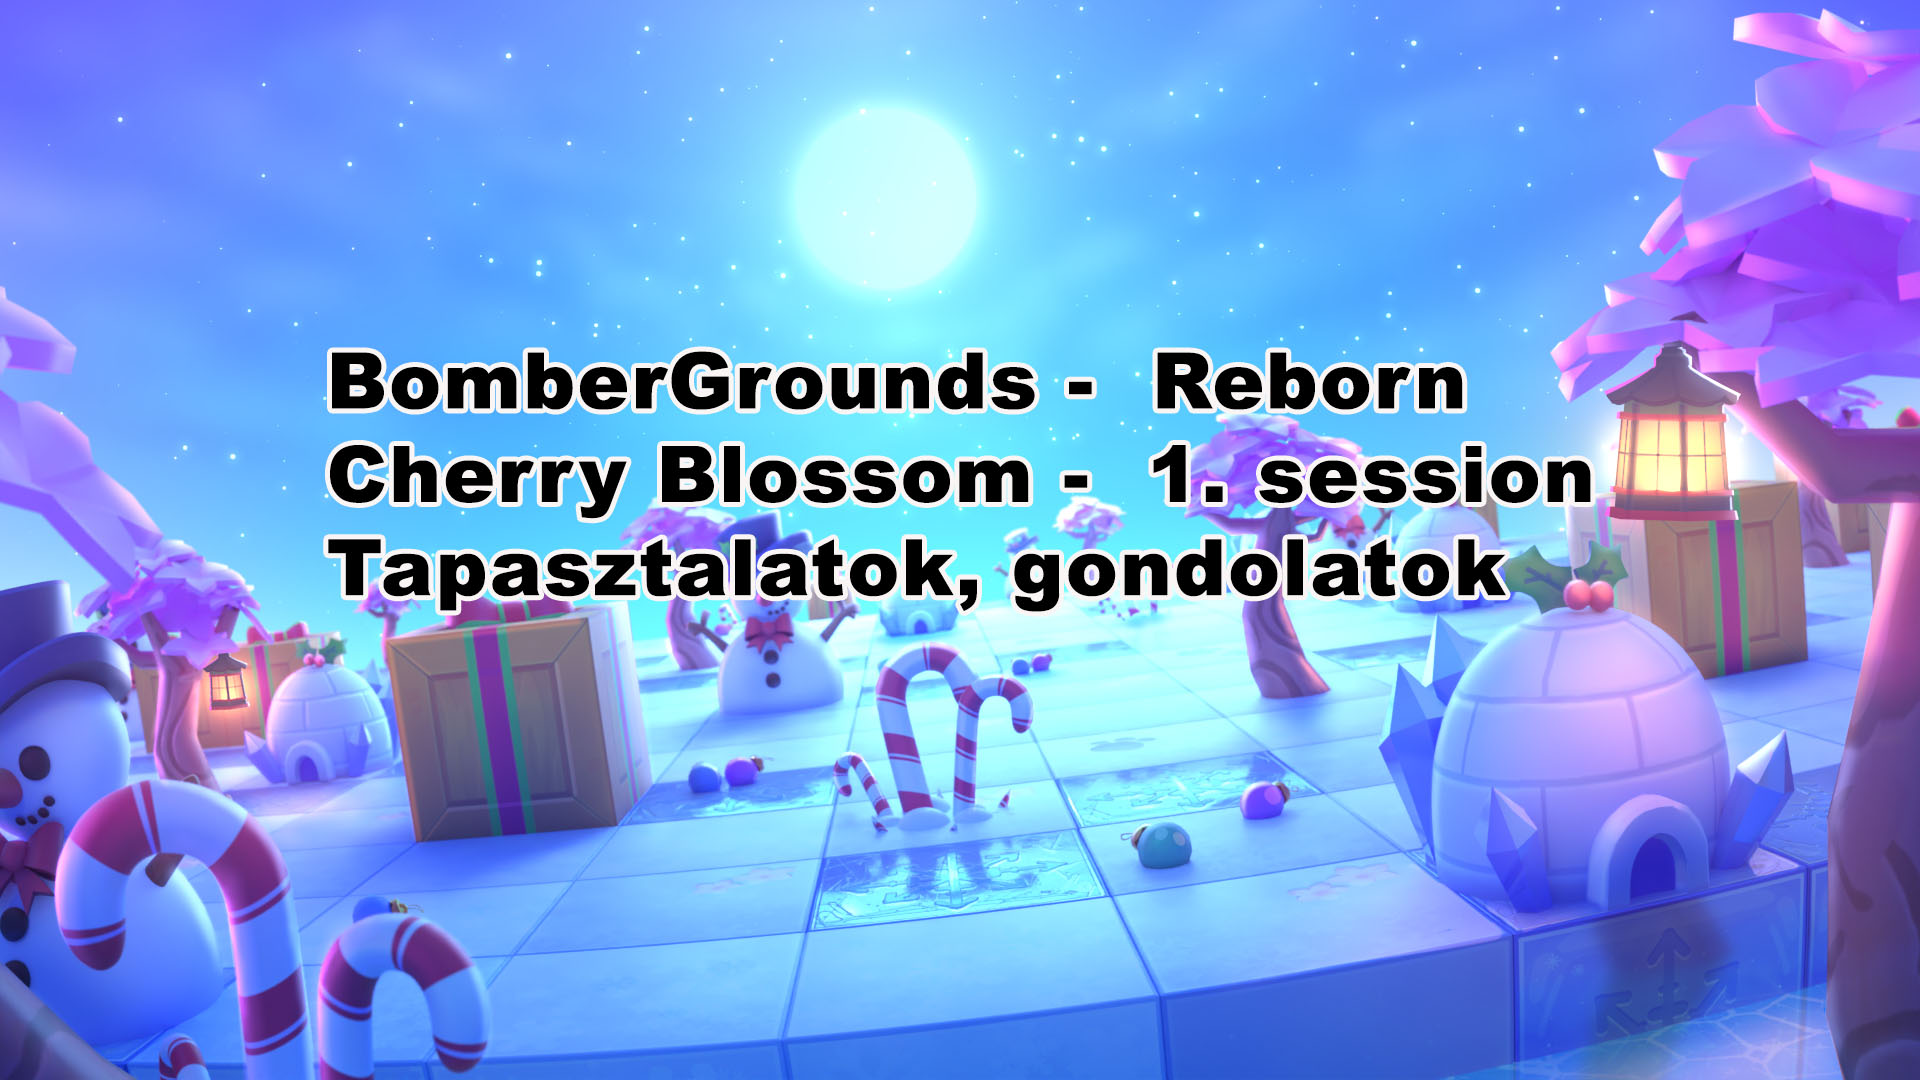 bombergrounds_reborn_cherry_blossom.jpg